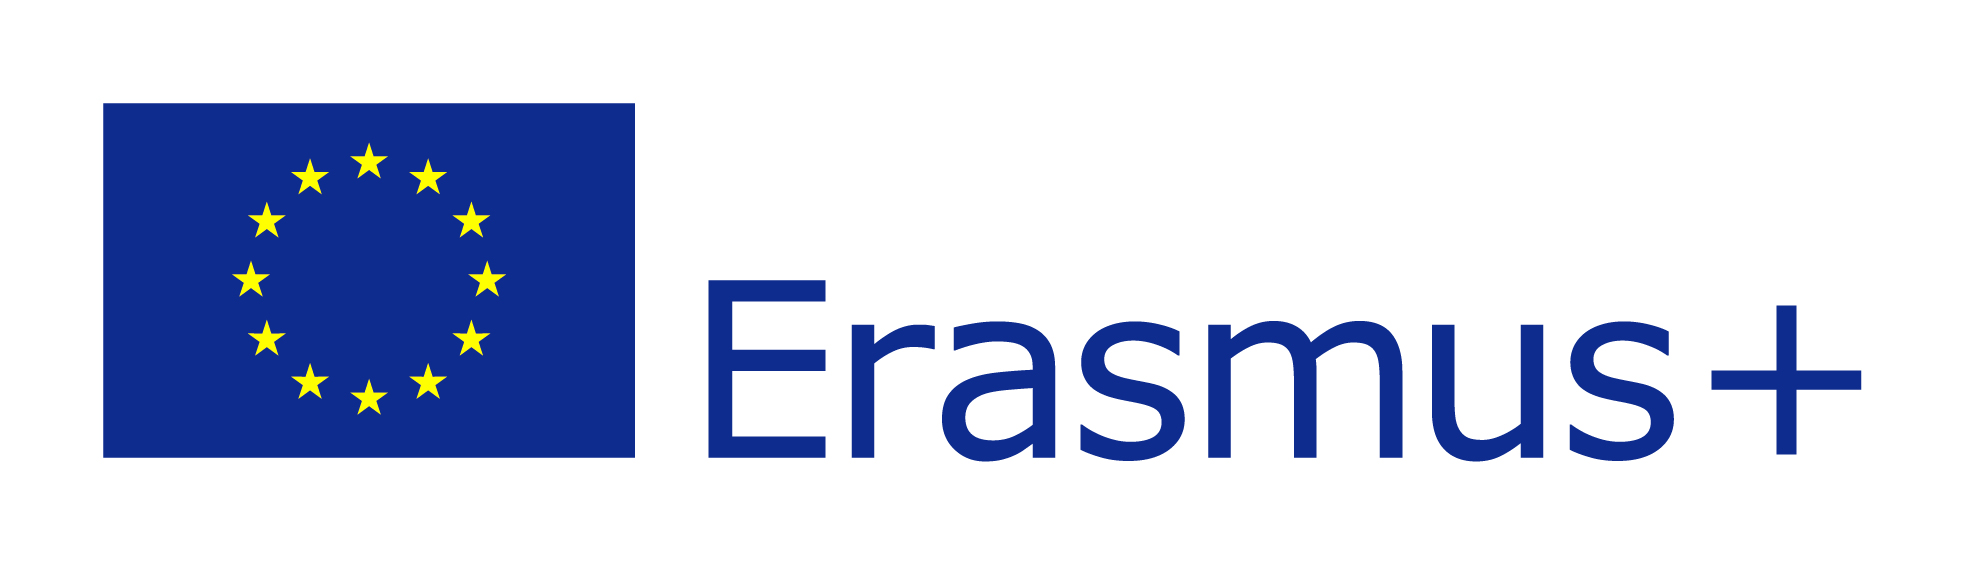 Erasmus+ Programme logos